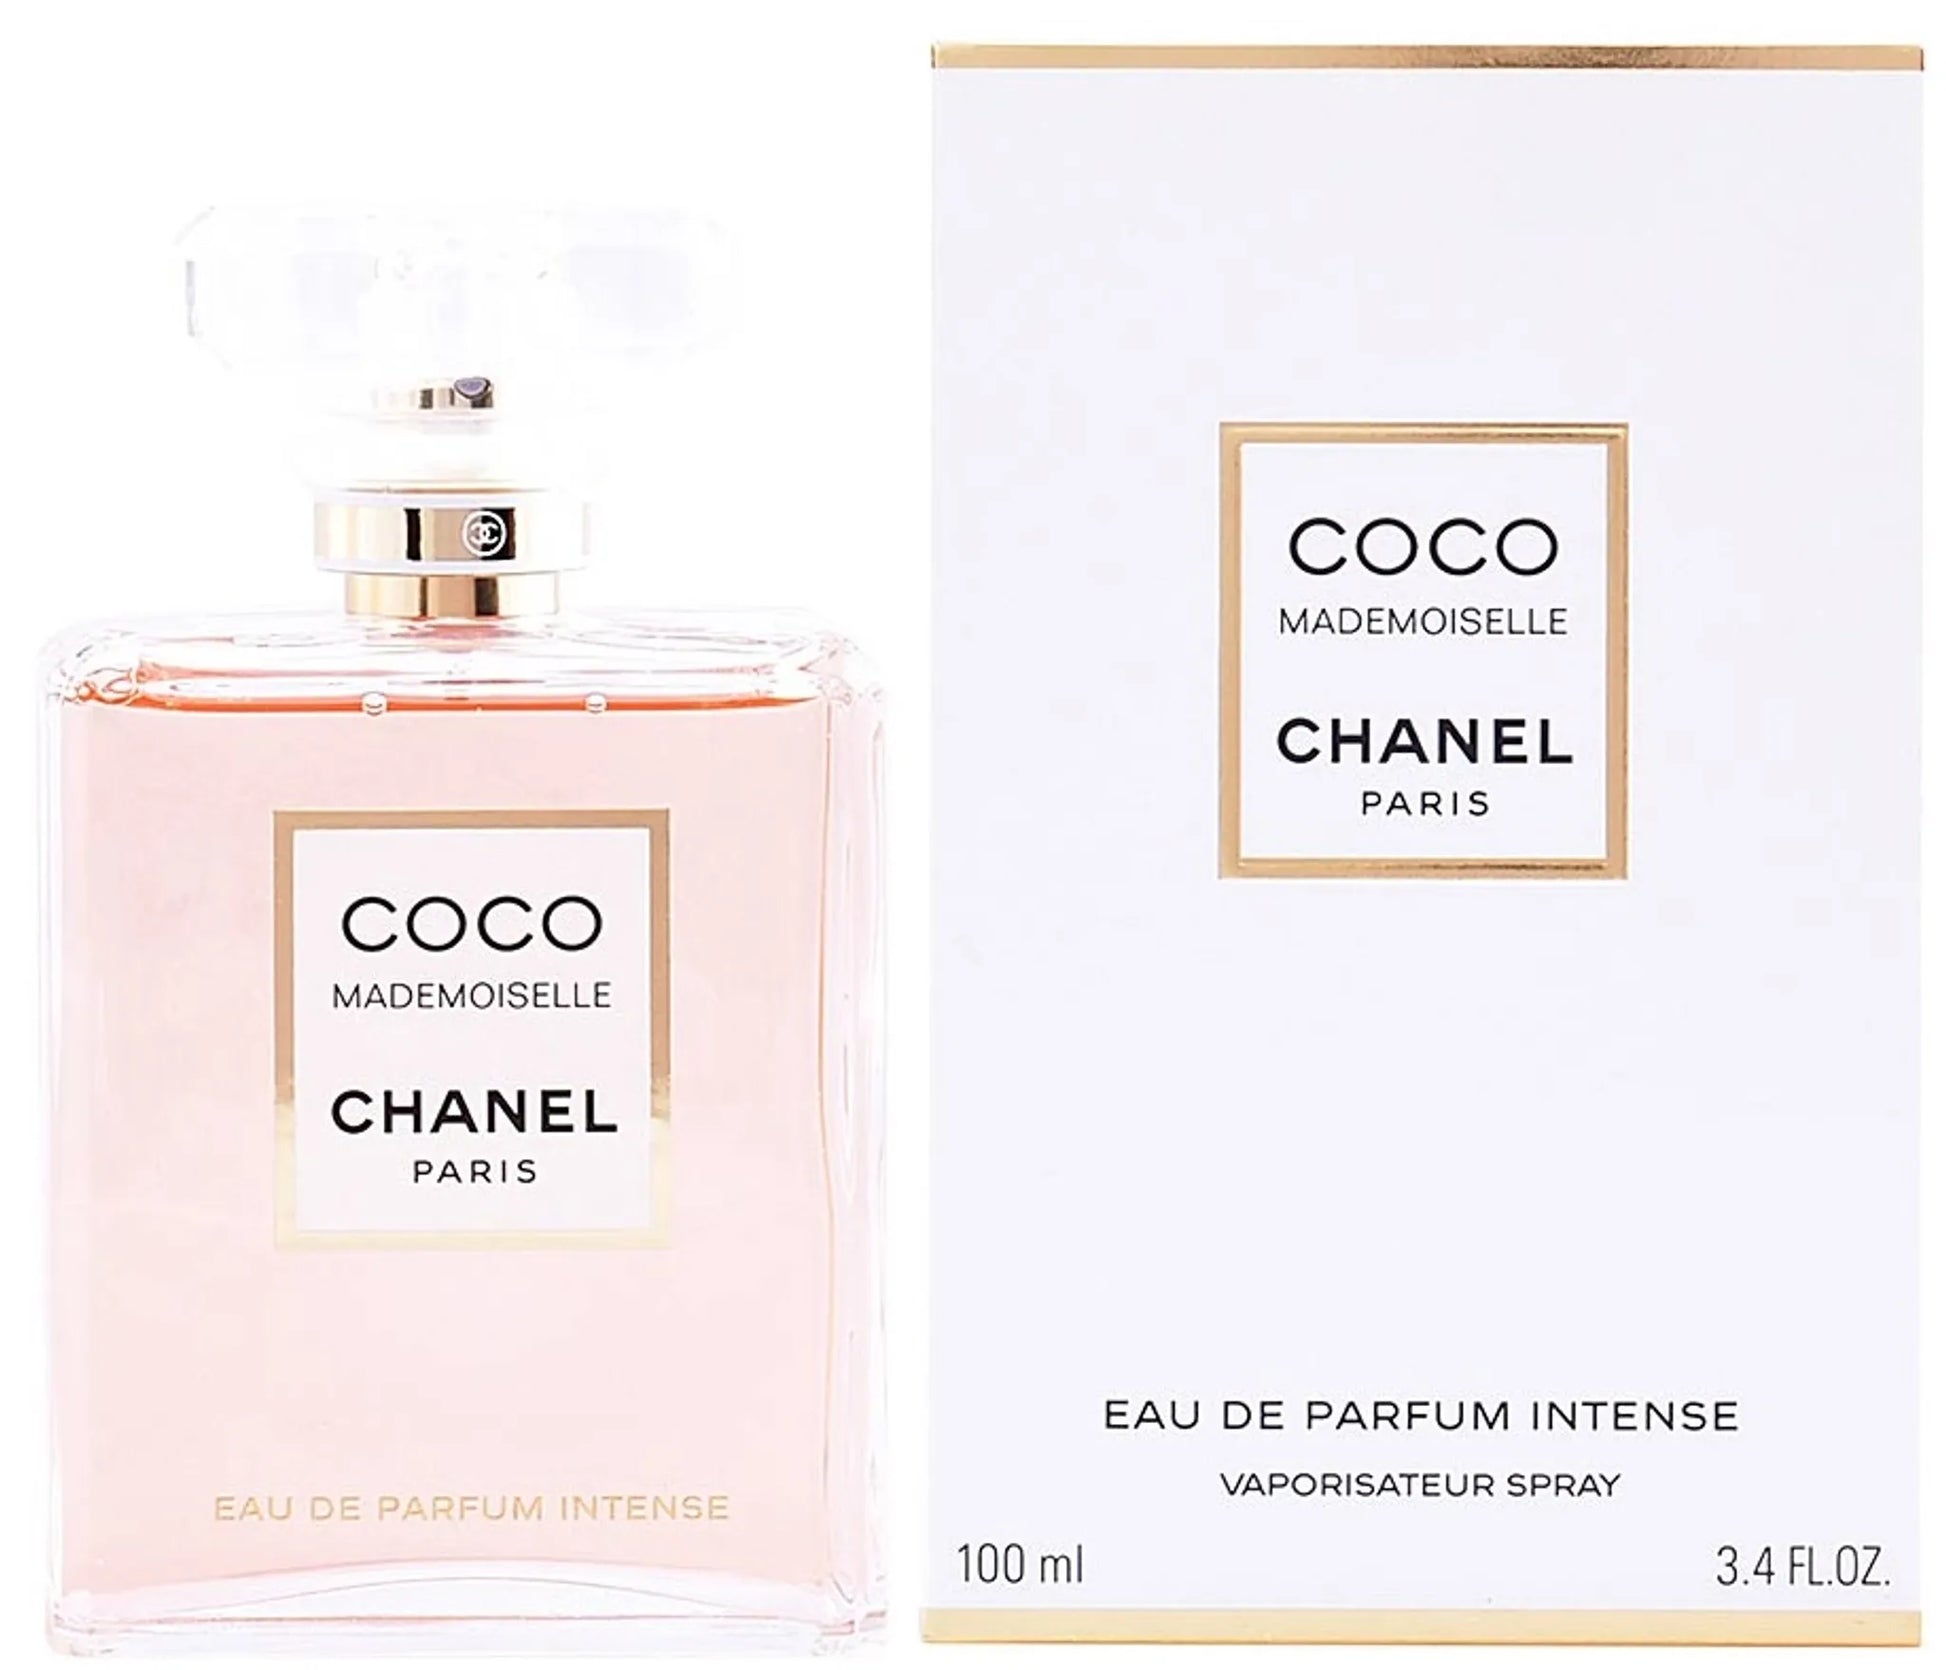 Chanel Coco Mademoiselle Intense Eau de Parfum 100 ml